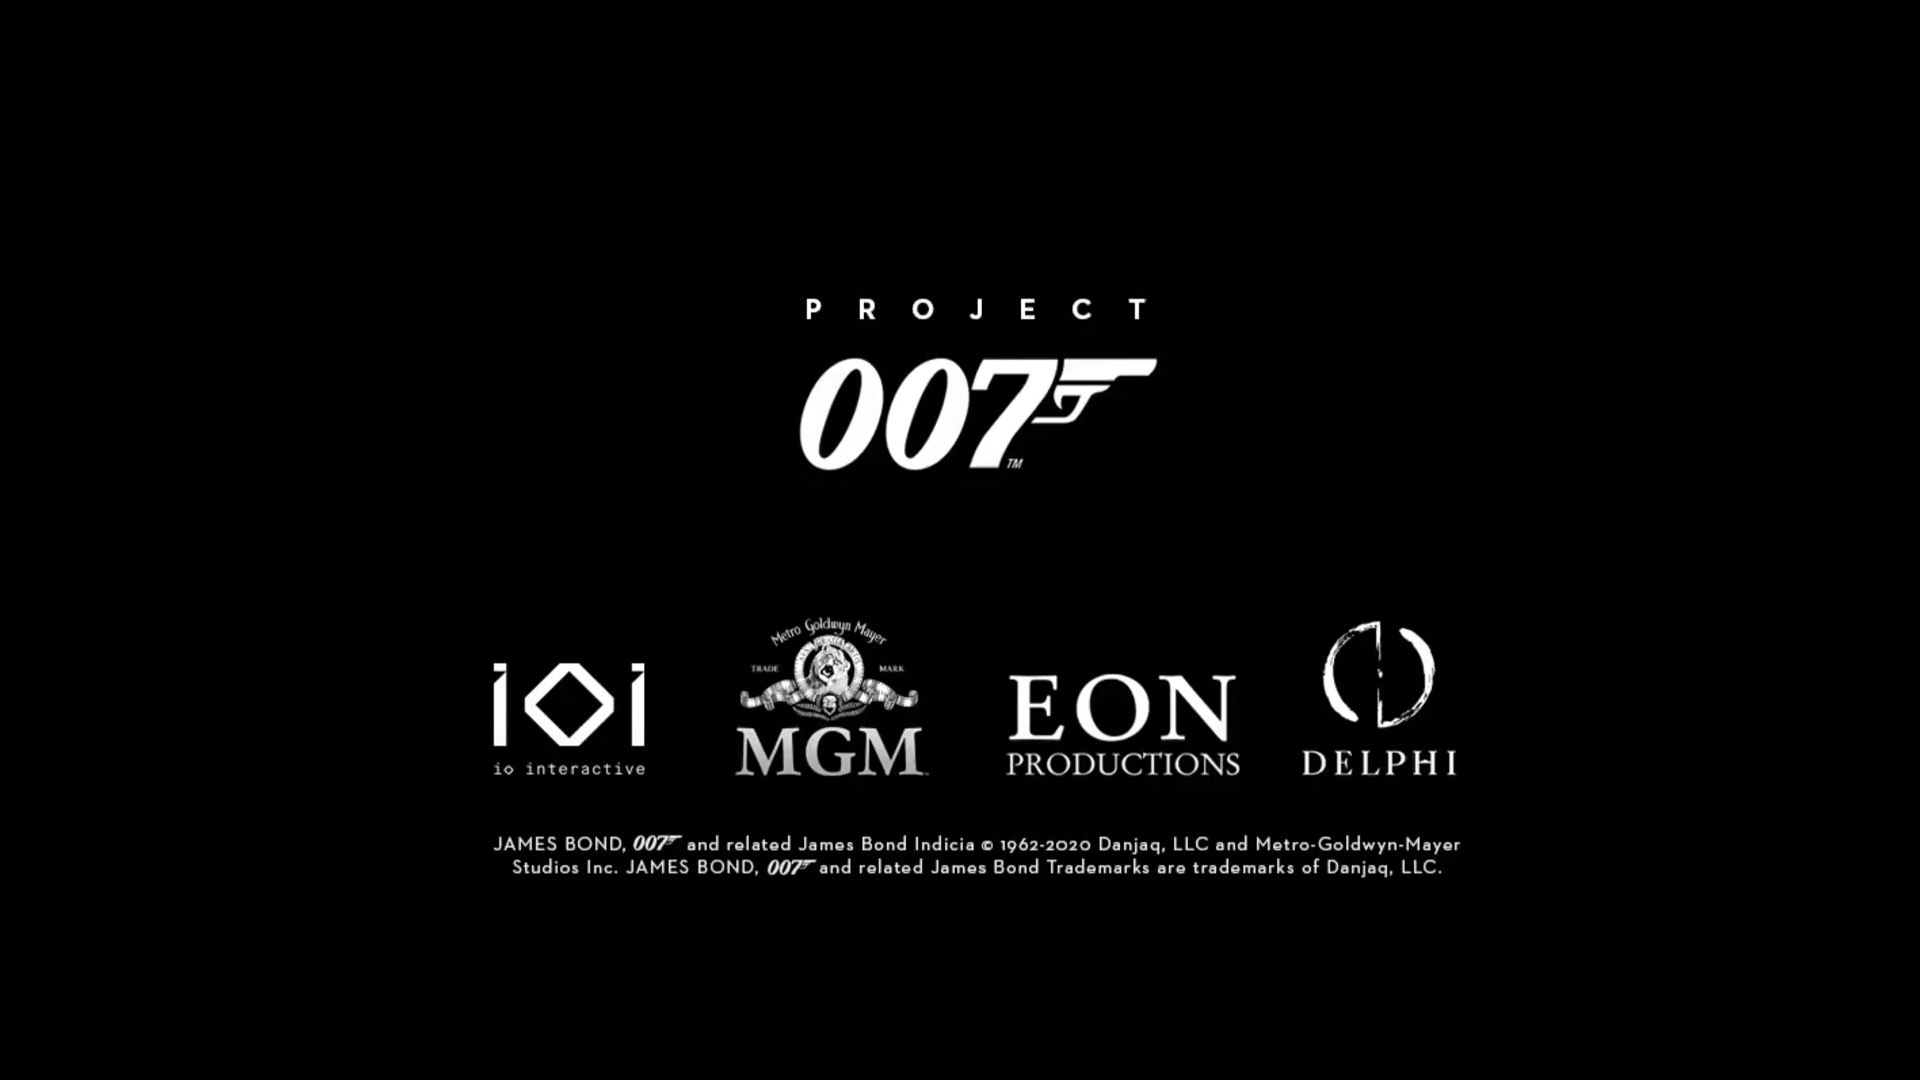 بازی جدید سازنده هیتمن با نام Project 007 معرفی شد